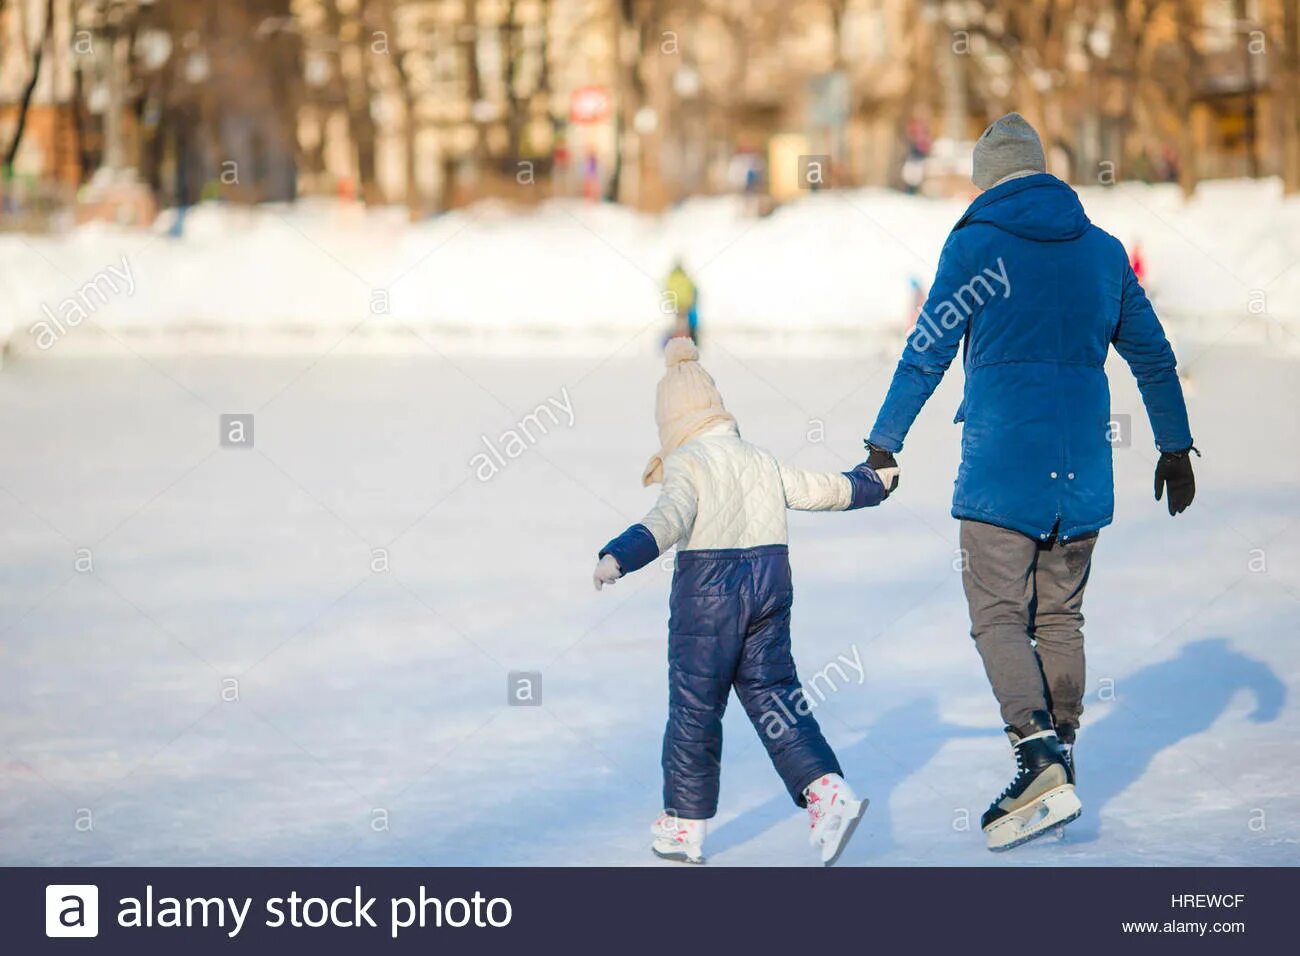 Папа учит кататься на коньках. Отец учит кататься на коньках. Папа с сыном на коньках. Мама учит малыша кататься на коньках.